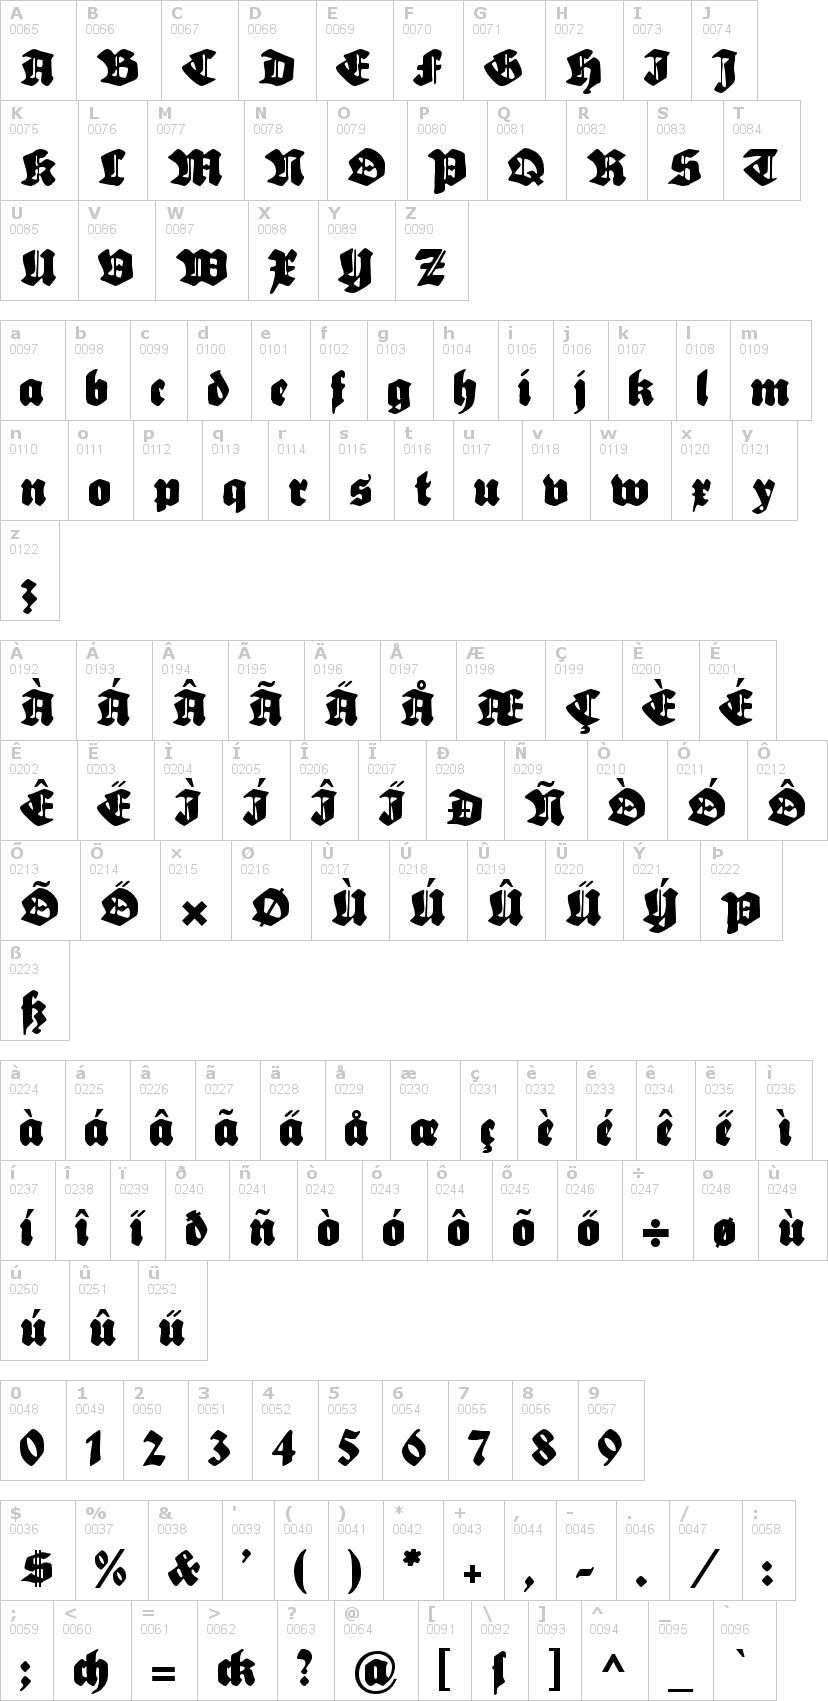 Lettere dell'alfabeto del font sebaldus-gotisch con le quali è possibile realizzare adesivi prespaziati